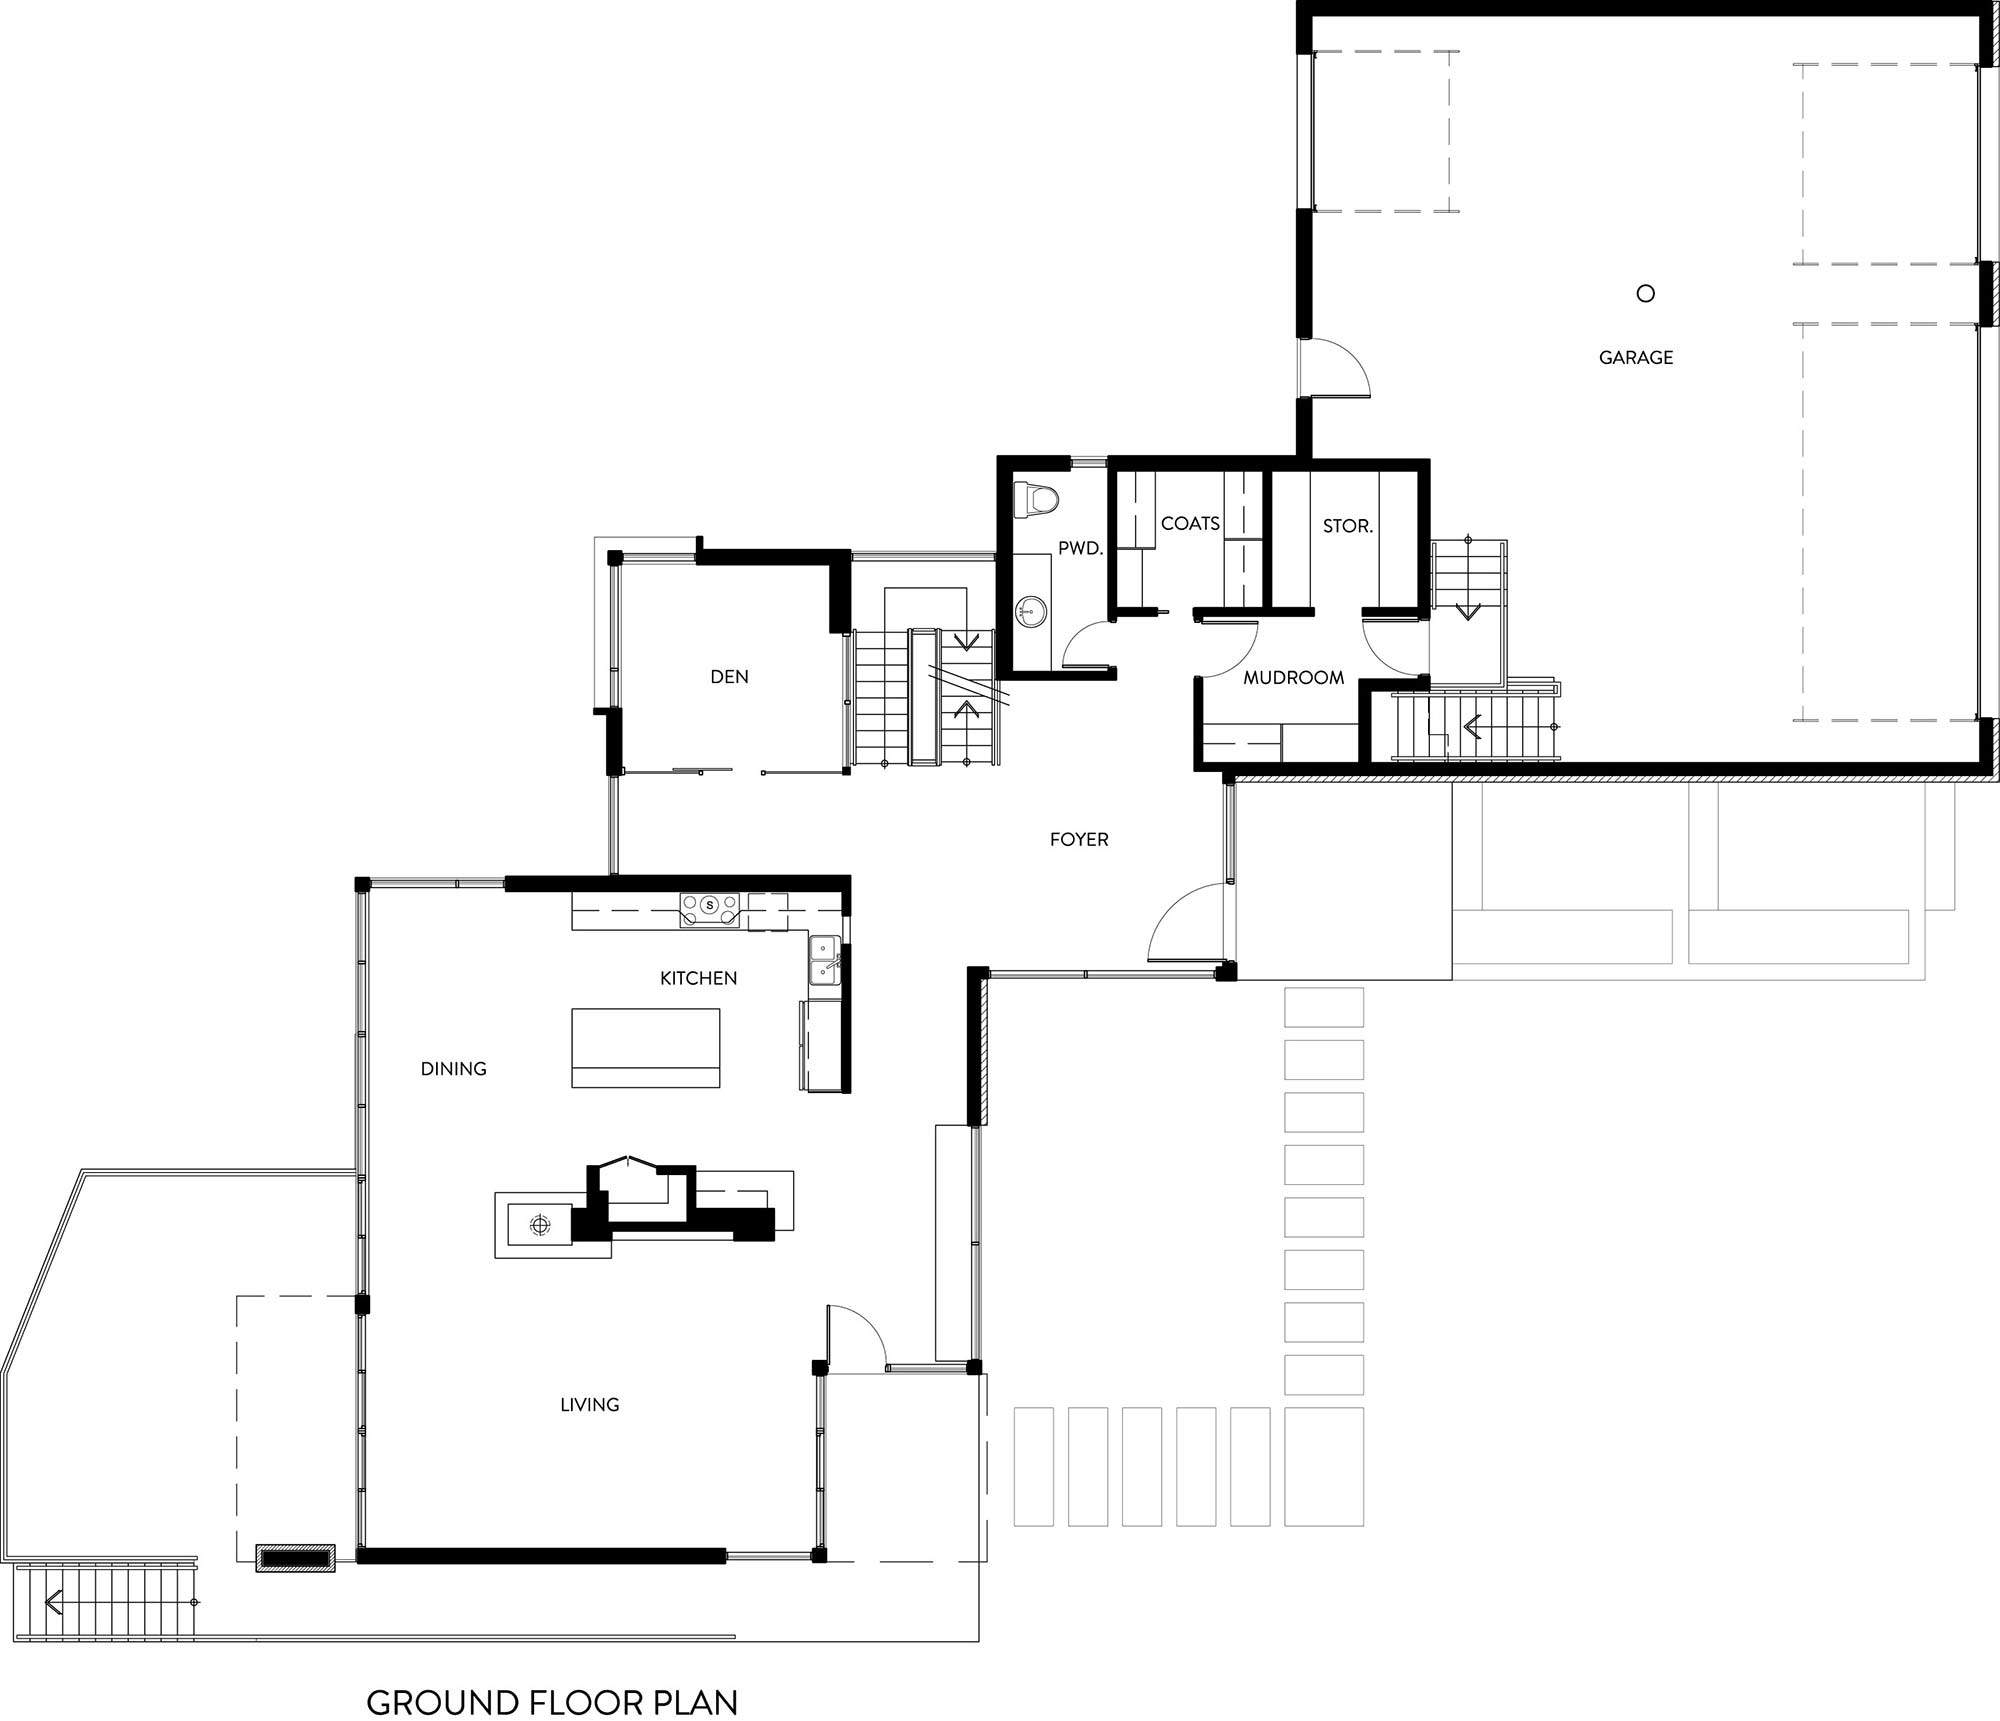 Ground Floor Plan, Riverside Home in Ottawa, Canada